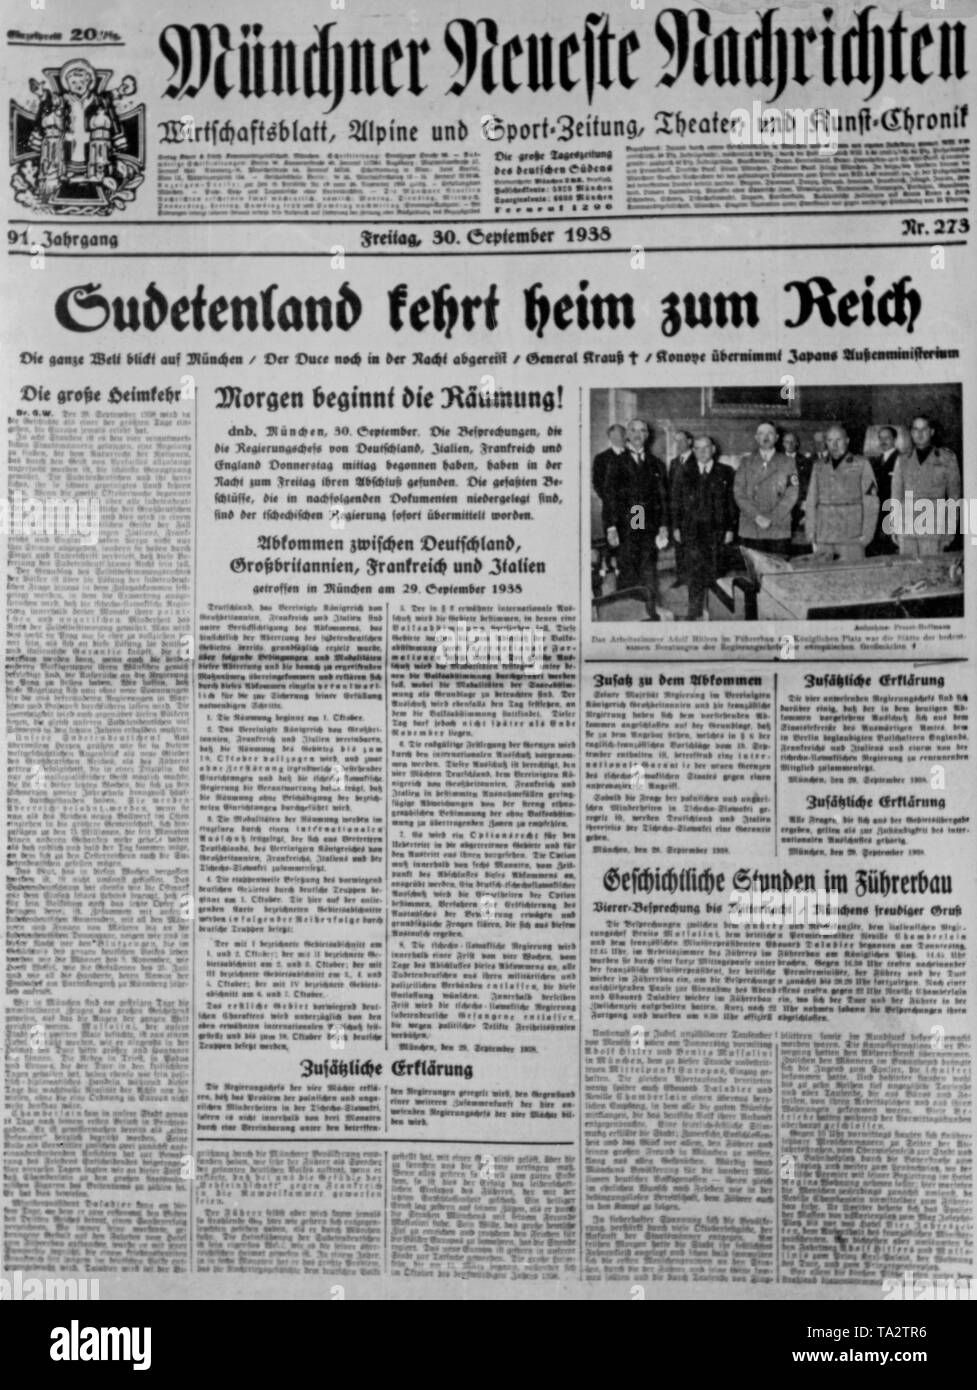 Extrait du journal "uenchner Neueste Nachrichten" du 30 septembre 1938. Les articles de journaux sur le contrat signé entre l'Allemagne, la France, l'Italie et la Grande-Bretagne concernant l'anschluss des Sudètes à l'Allemagne le 29 septembre 1938. Banque D'Images